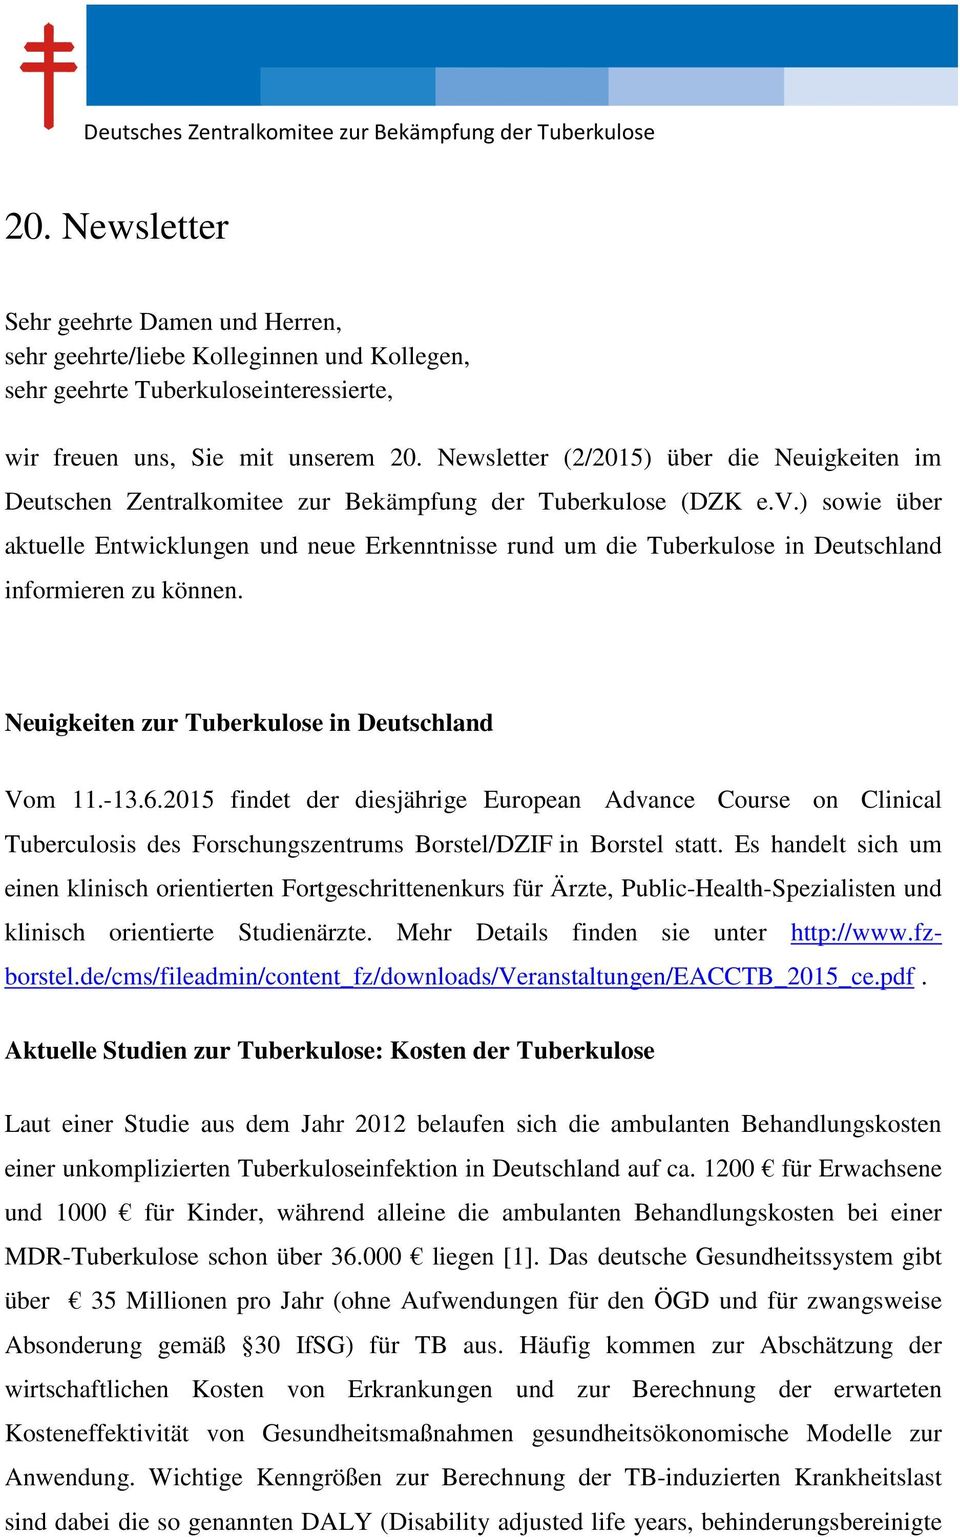 Newsletter (2/2015) über die Neuigkeiten im Deutschen Zentralkomitee zur Bekämpfung der Tuberkulose (DZK e.v.